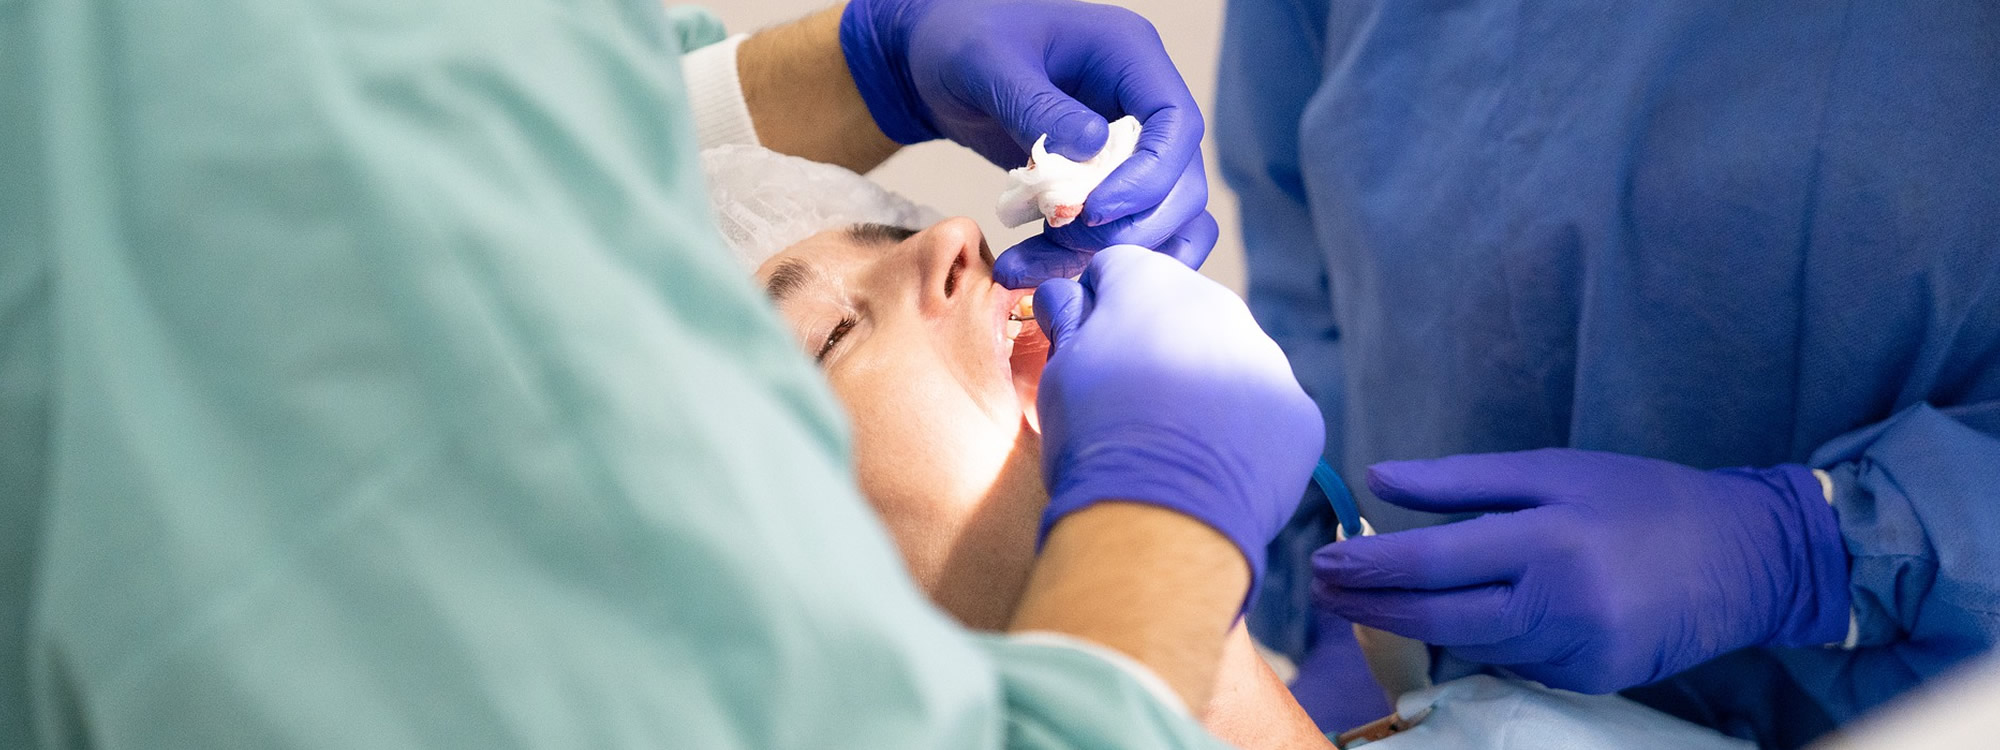 Carie dentaire : prévention et traitement